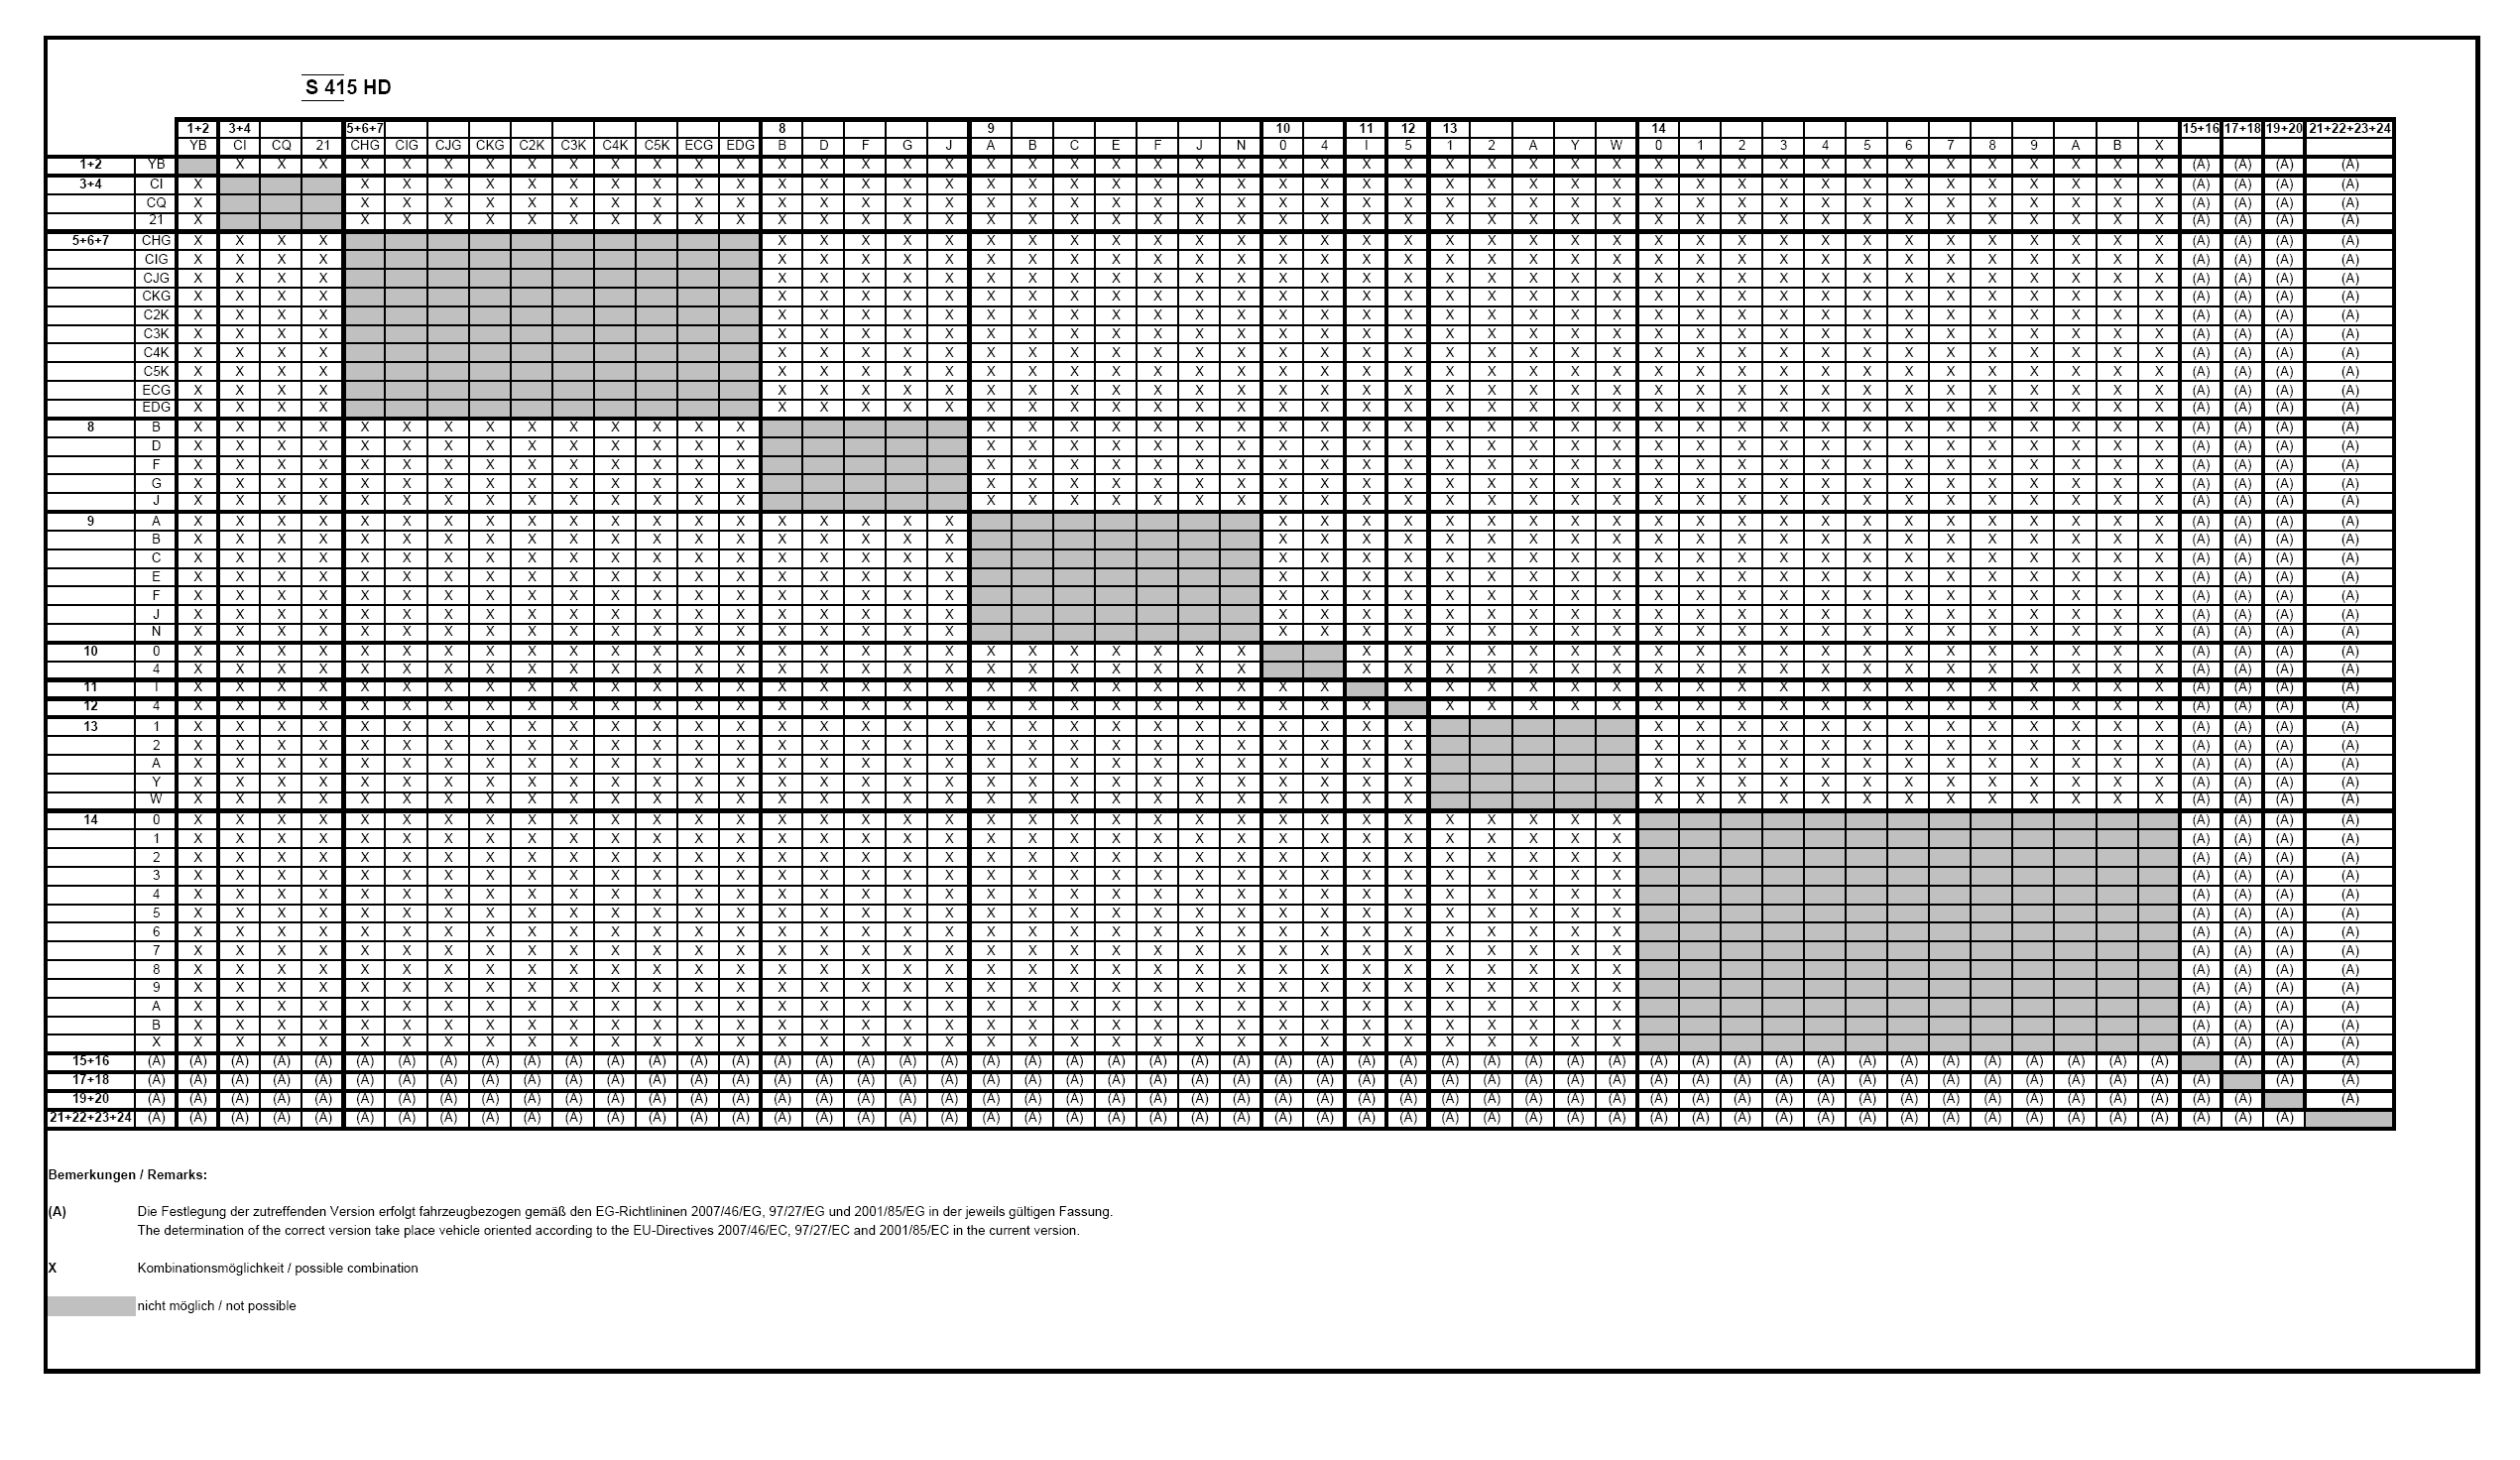 Πίνακας Ζ επιτρεπόµενων παραλλαγών και εκδόσεων µε εµπορική ονοµασία